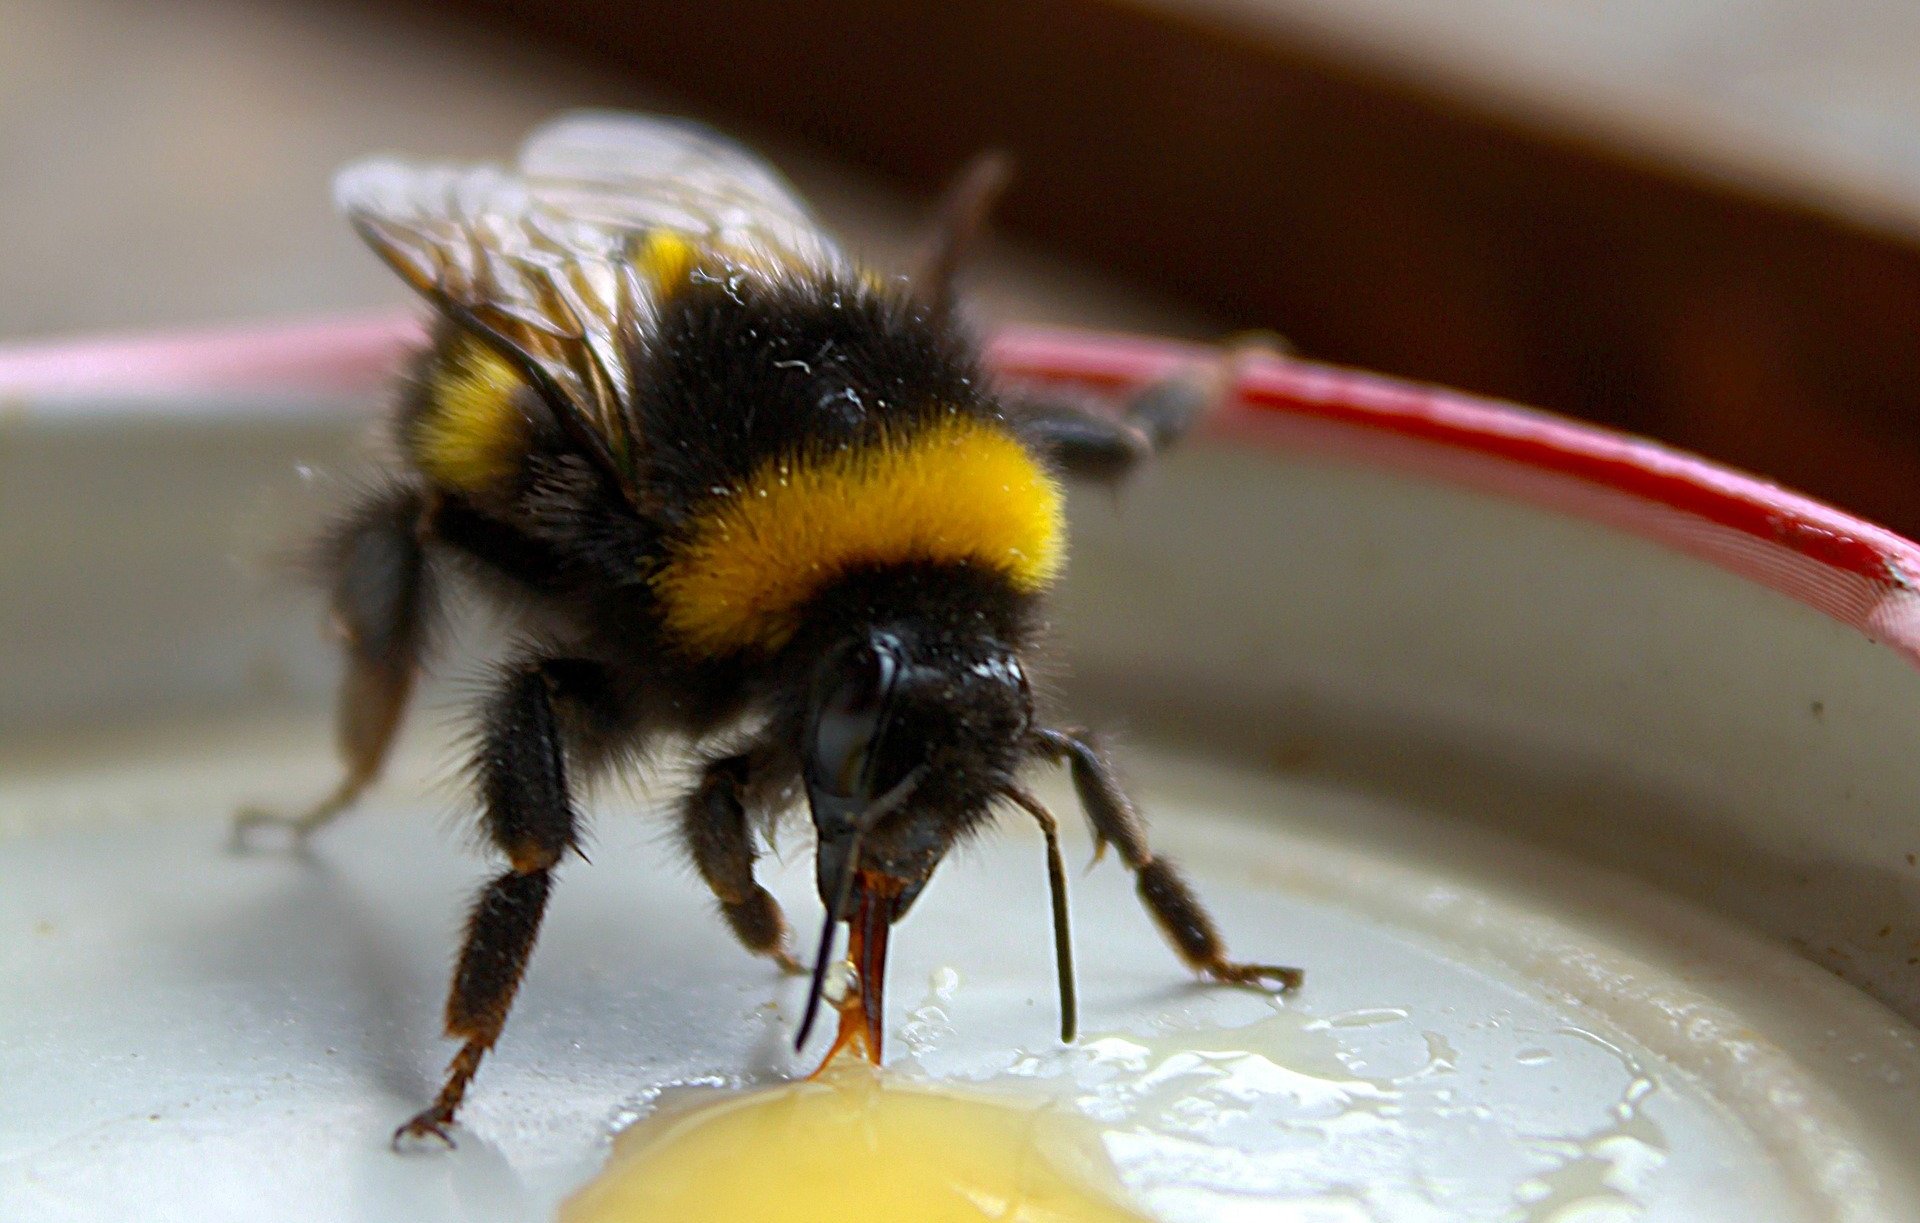 Bumblebee drinking